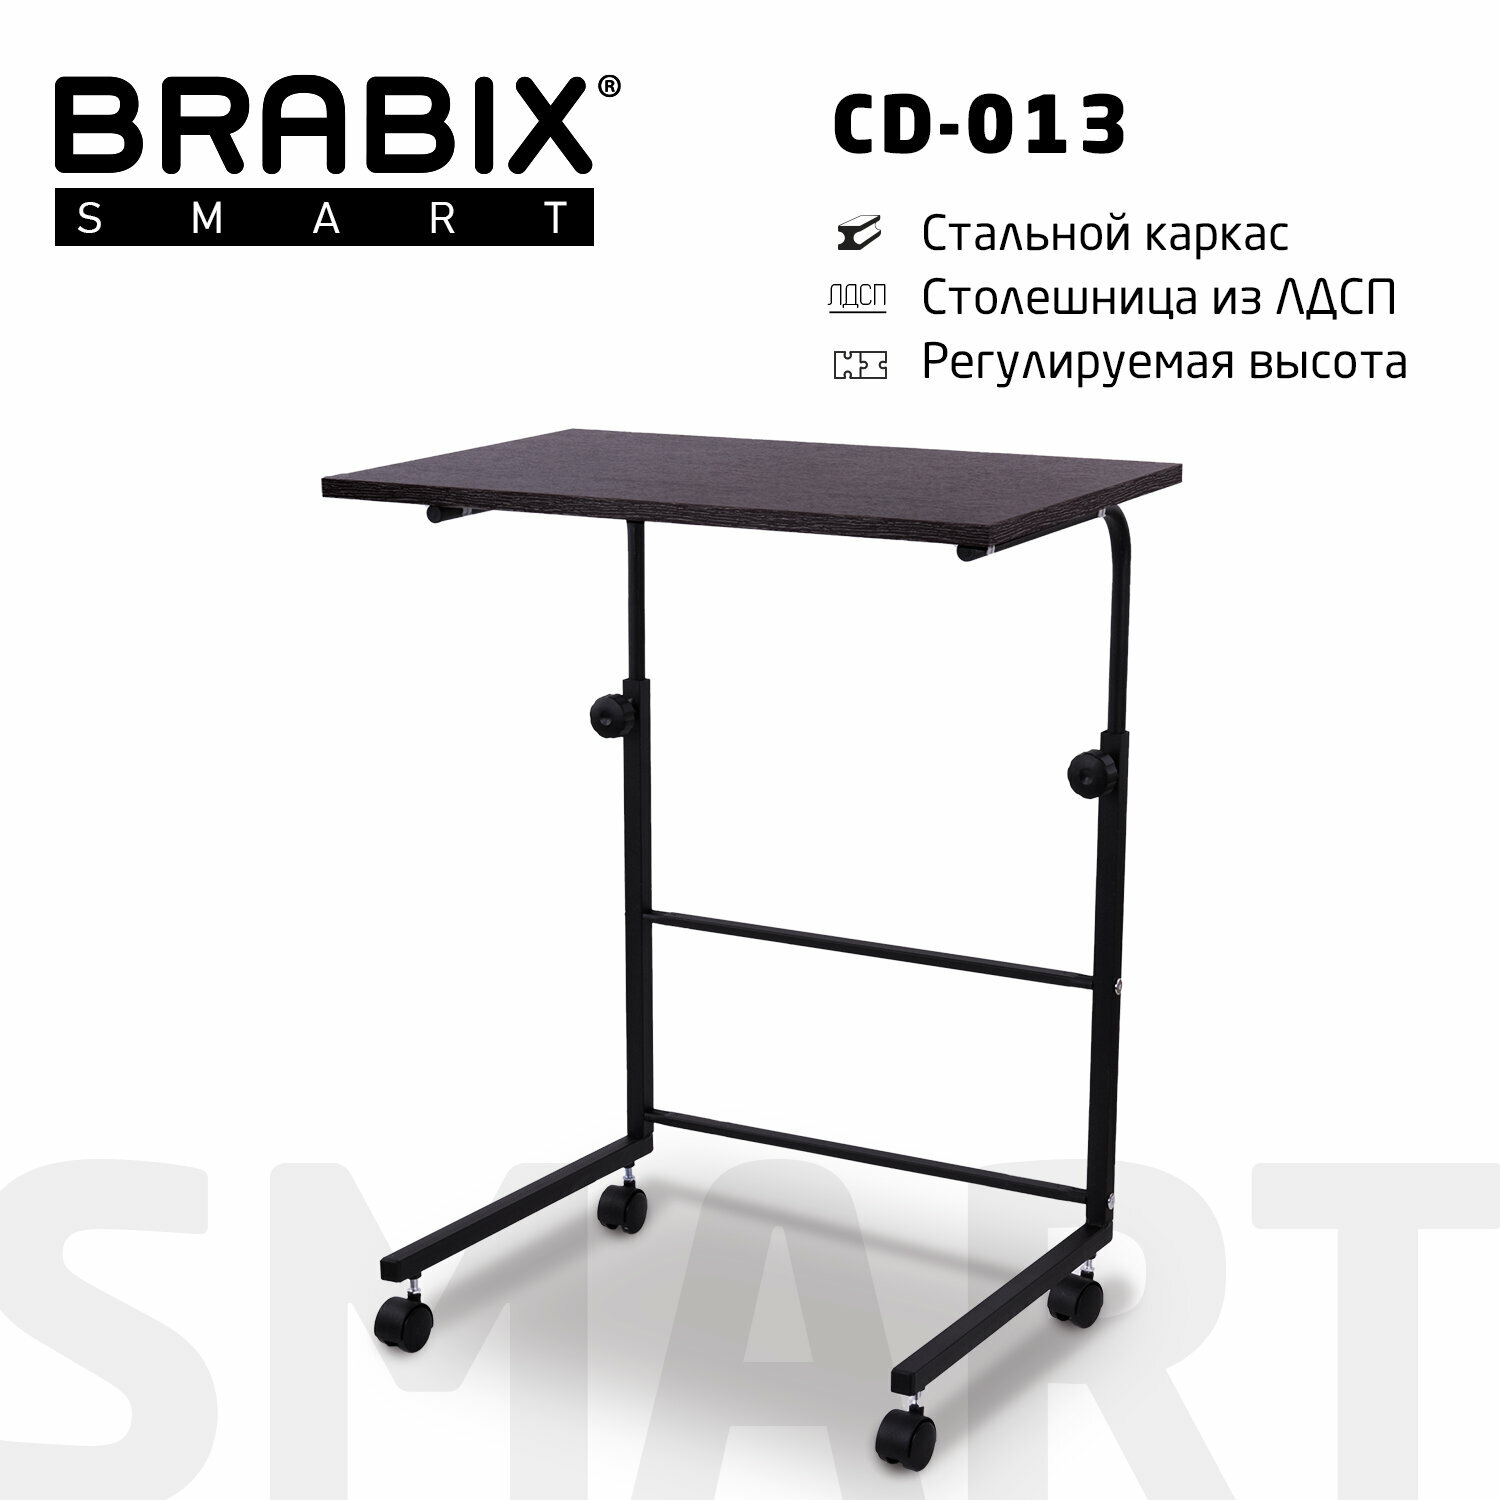 Стол BRABIX "Smart CD-013", 600х420х745-860 мм, лофт, регулируемый, колеса, металл/ЛДСП ясень, каркас черный, 641883